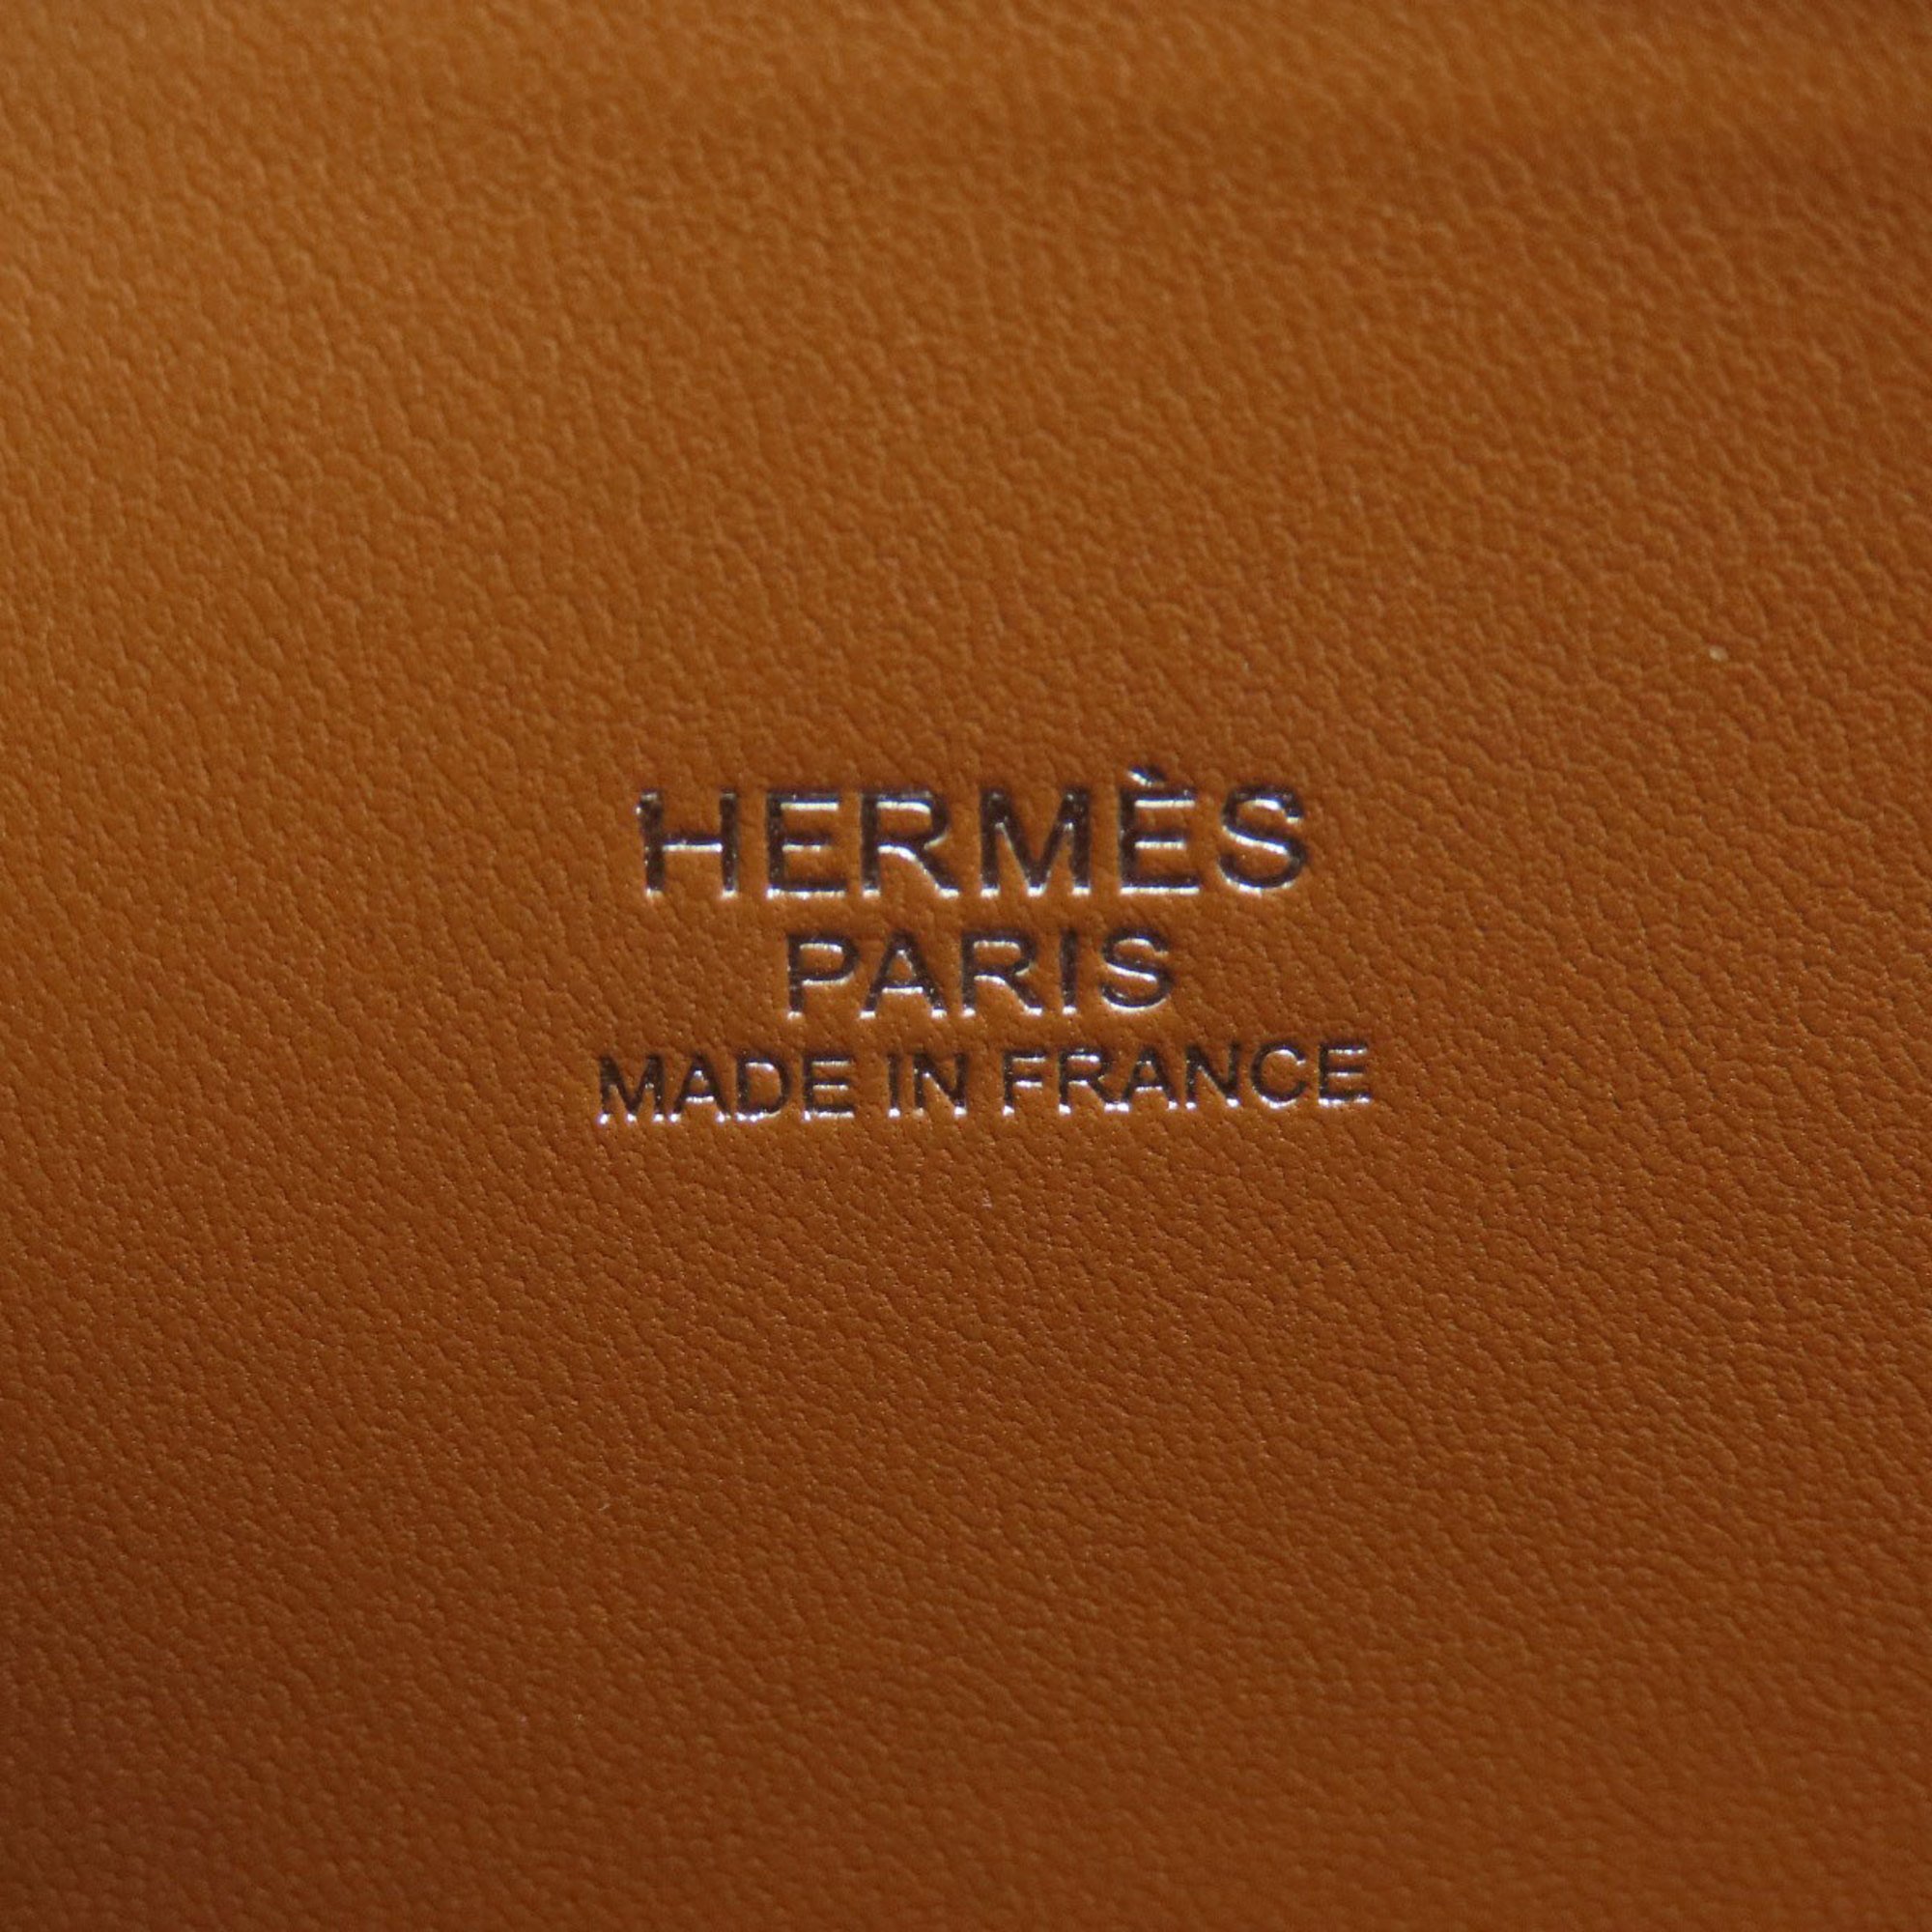 Hermes Bolide 27 Gold Handbag Epson Women's